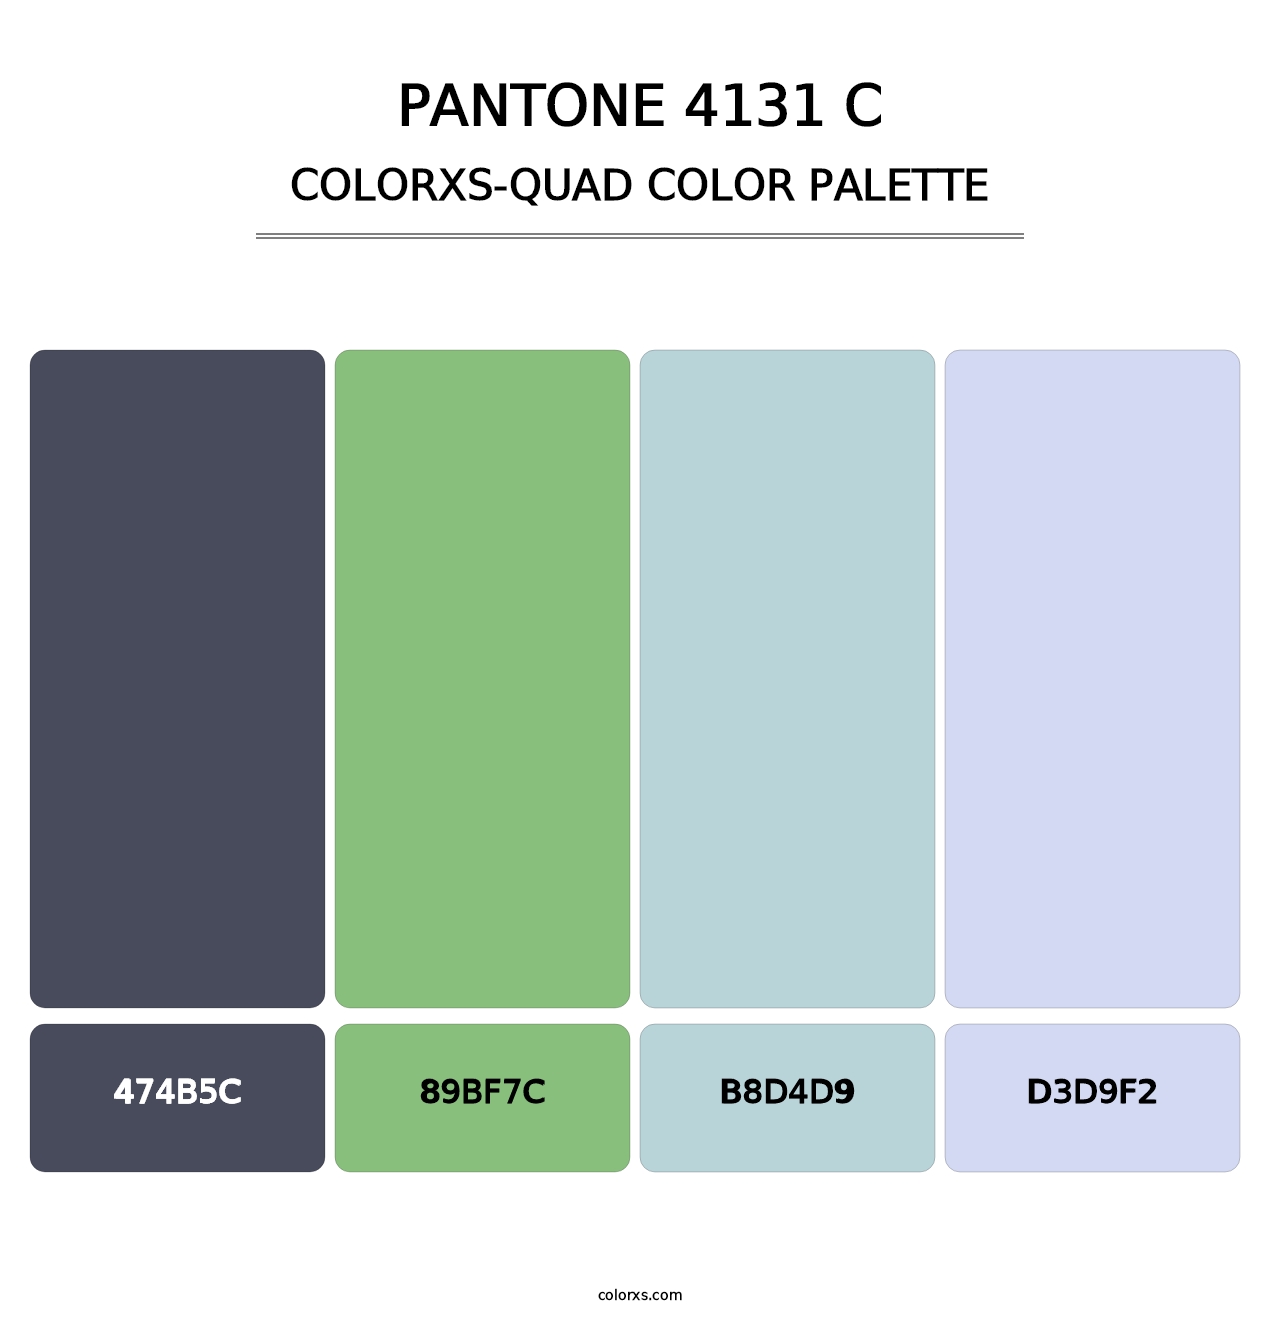 PANTONE 4131 C - Colorxs Quad Palette